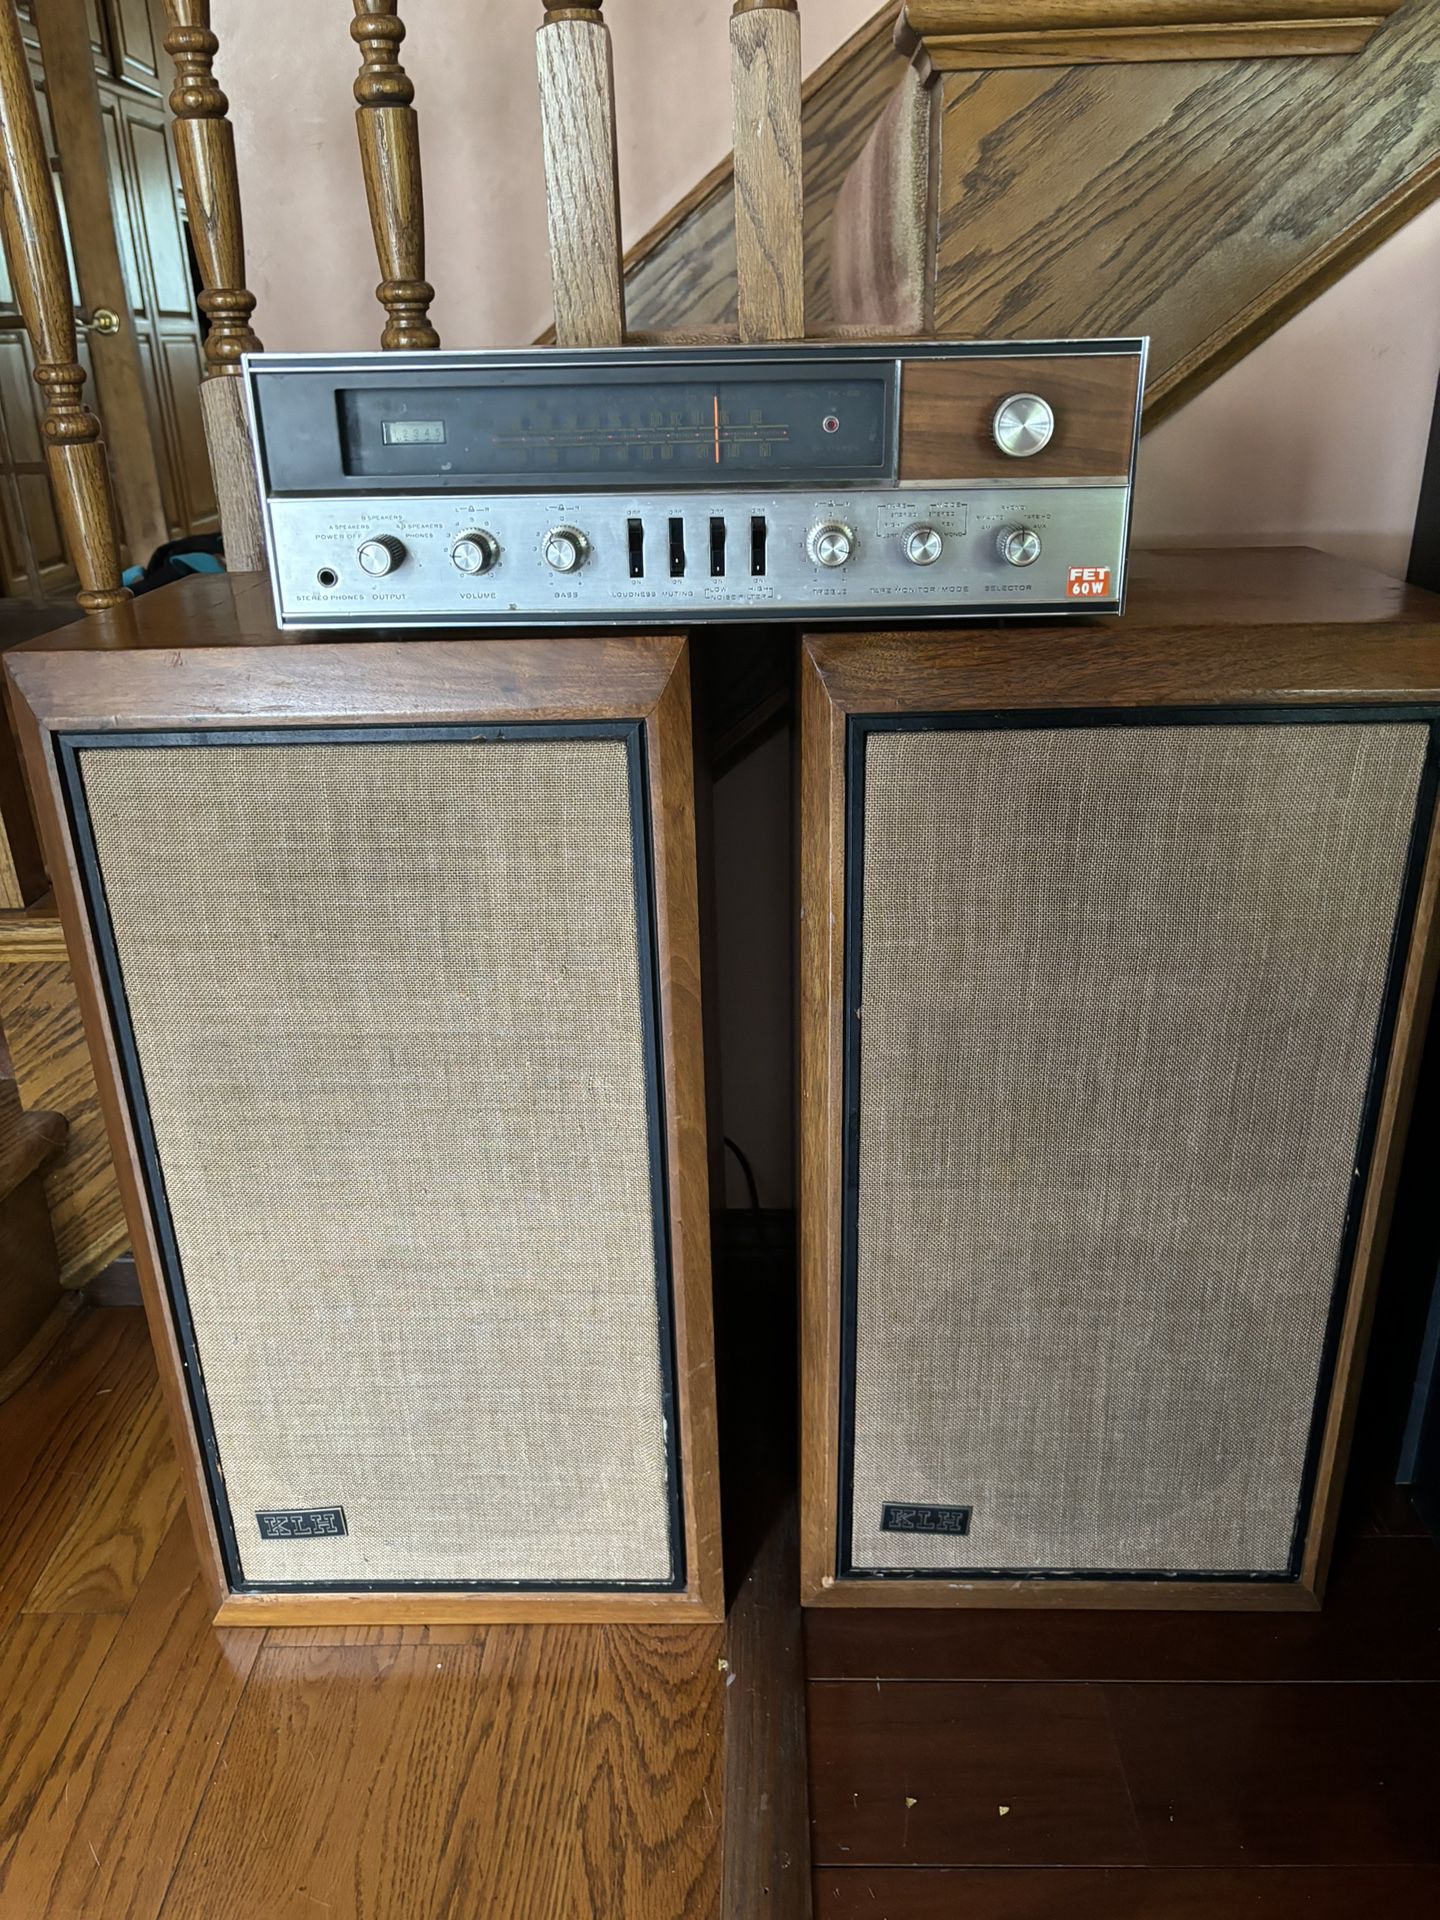 2 KLH Series 5 Vintage Walnut Speakers. Kenwood Receiver